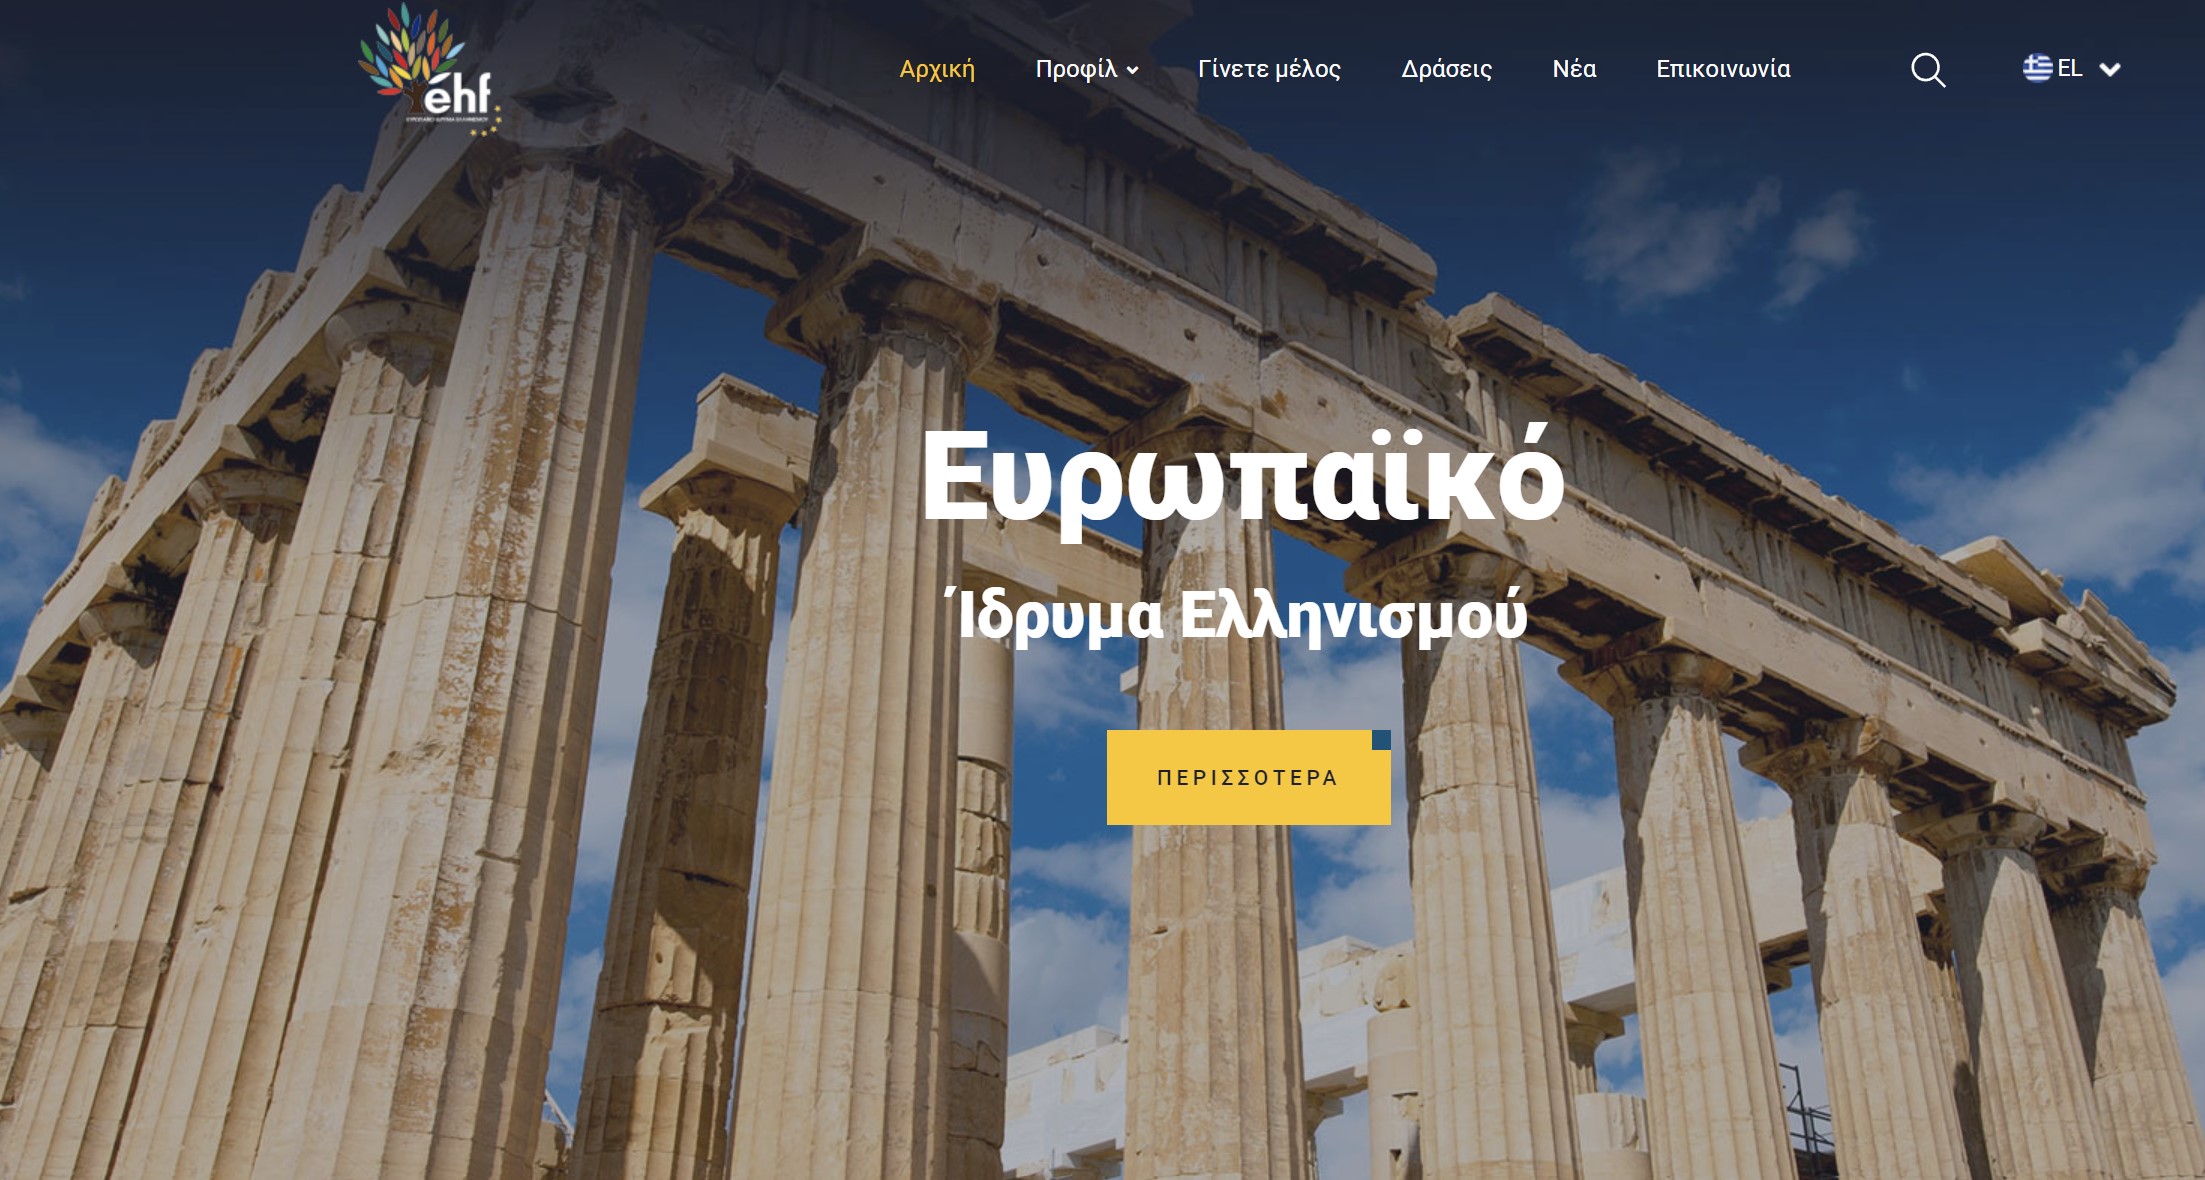 Πλέον και με την δικιά του ιστοσελίδα το Ευρωπαϊκό Ίδρυμα Ελληνισμού!